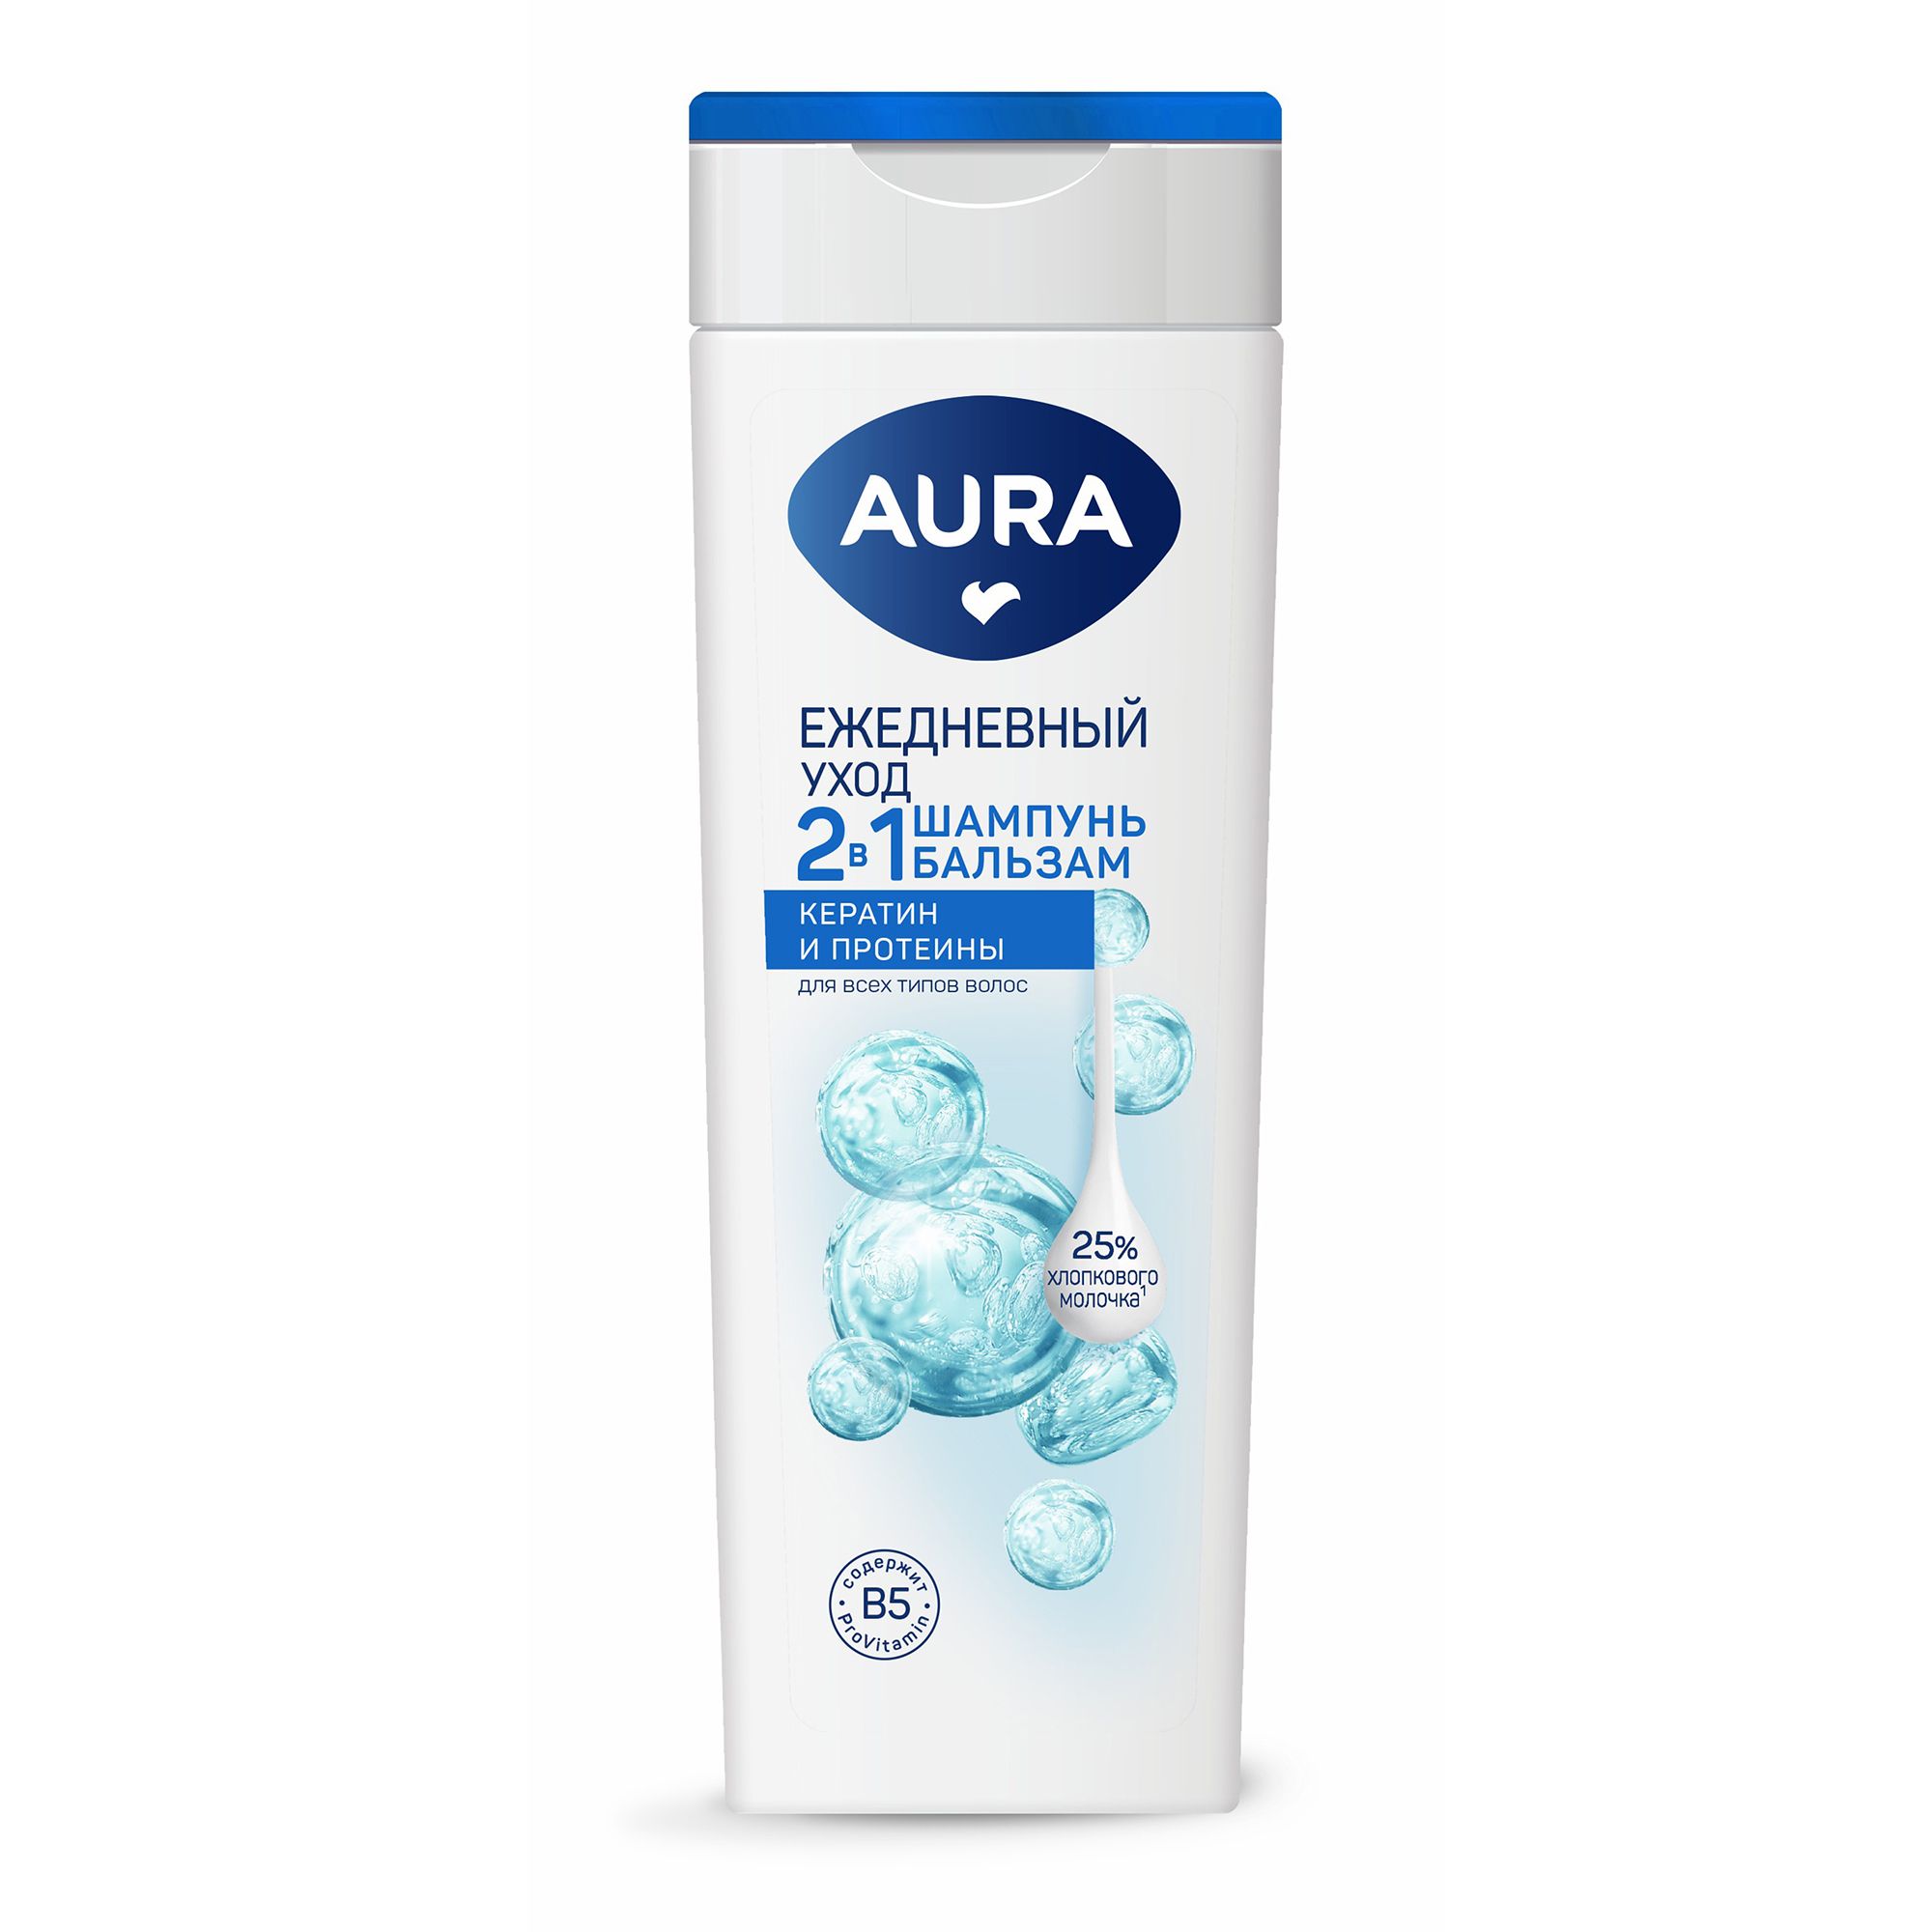 Шампунь-бальзам Aura 2 в 1 Ежедневный уход для всех типов волос 380 мл